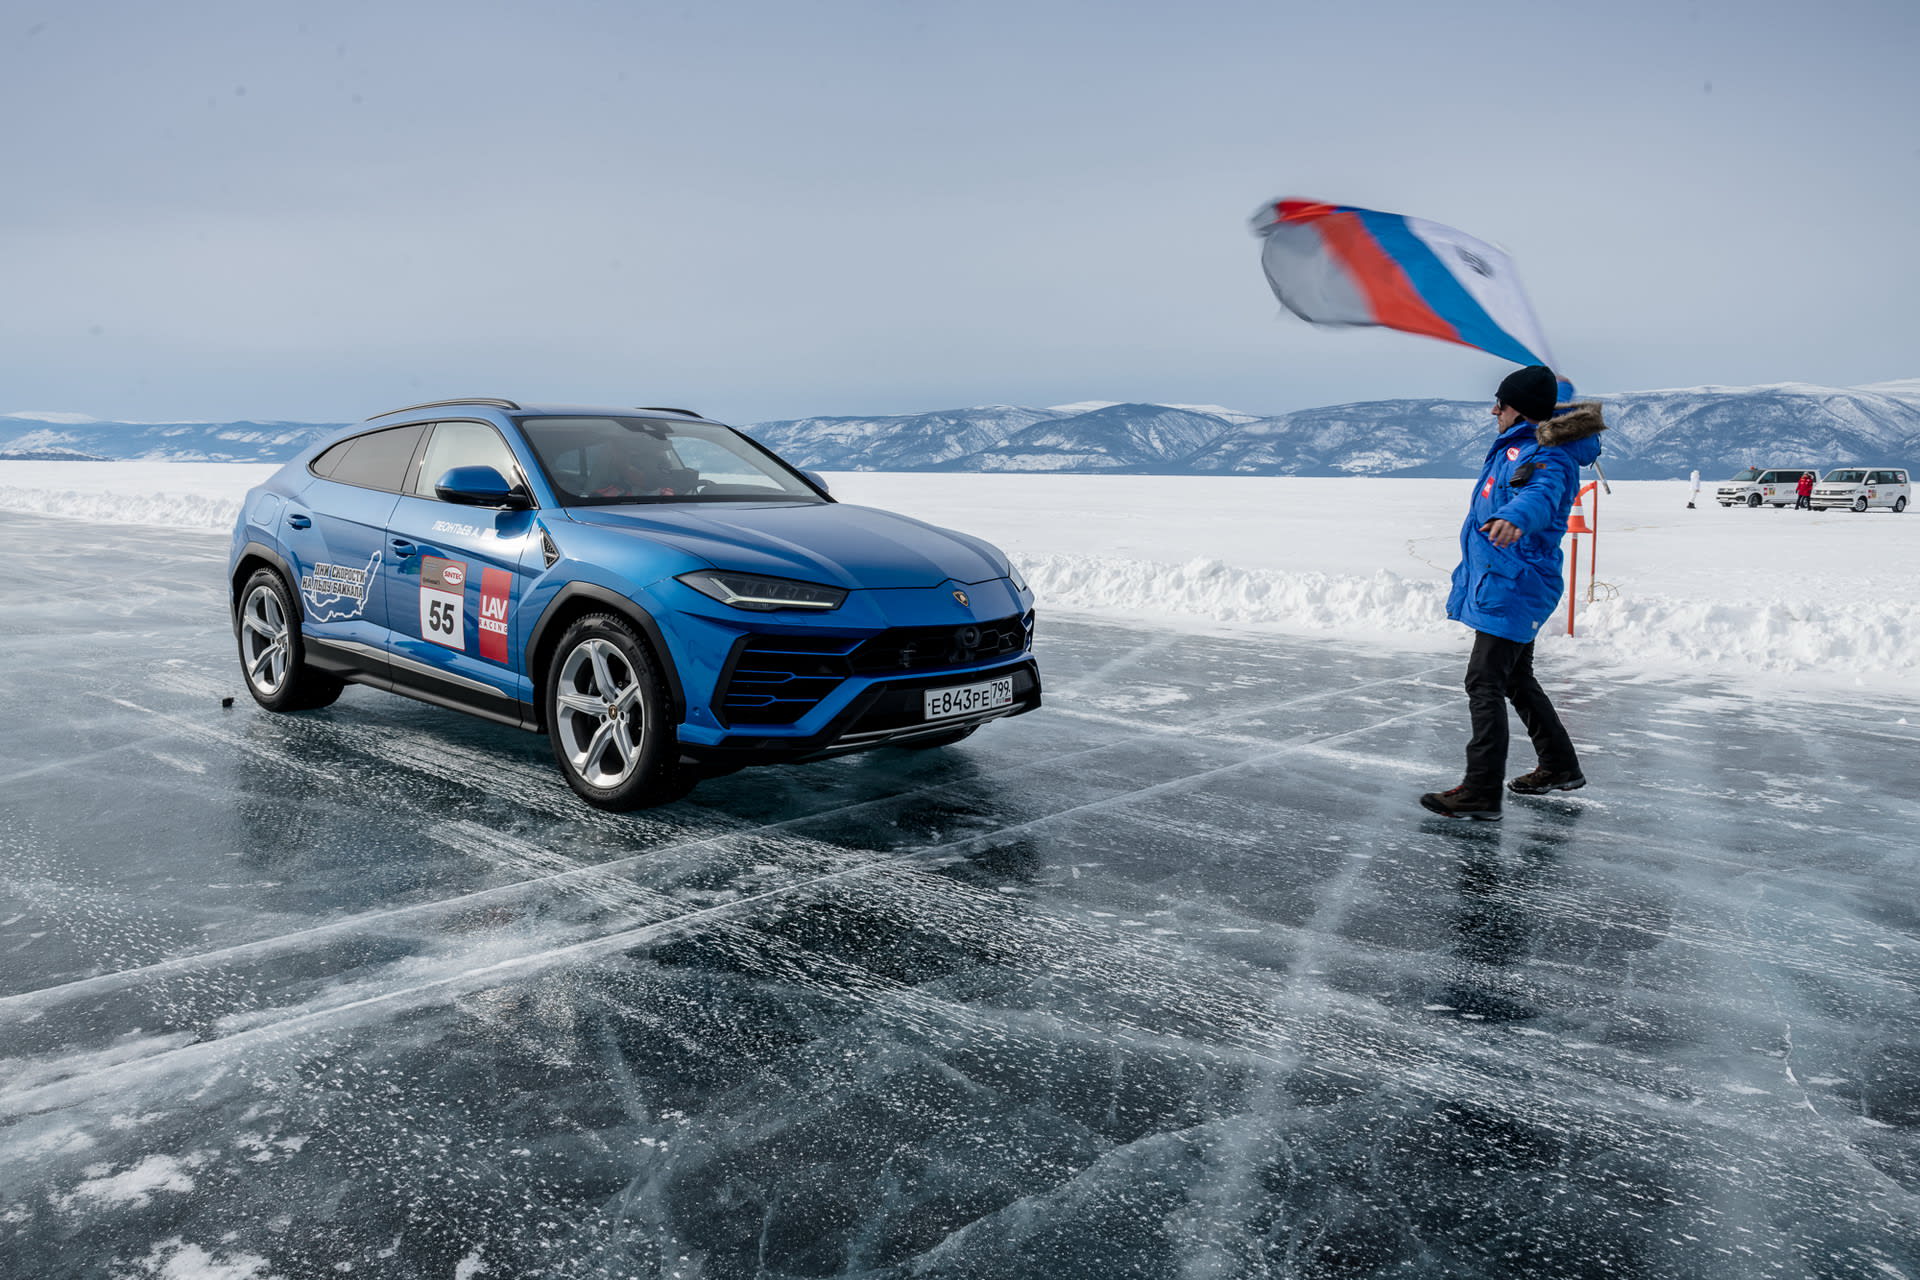 Takhle se Lamborghini Urus nedávno prohánělo po zamrzlém jezeře Bajkal. Do budoucna už možná podobné radovánky nebudou možné.